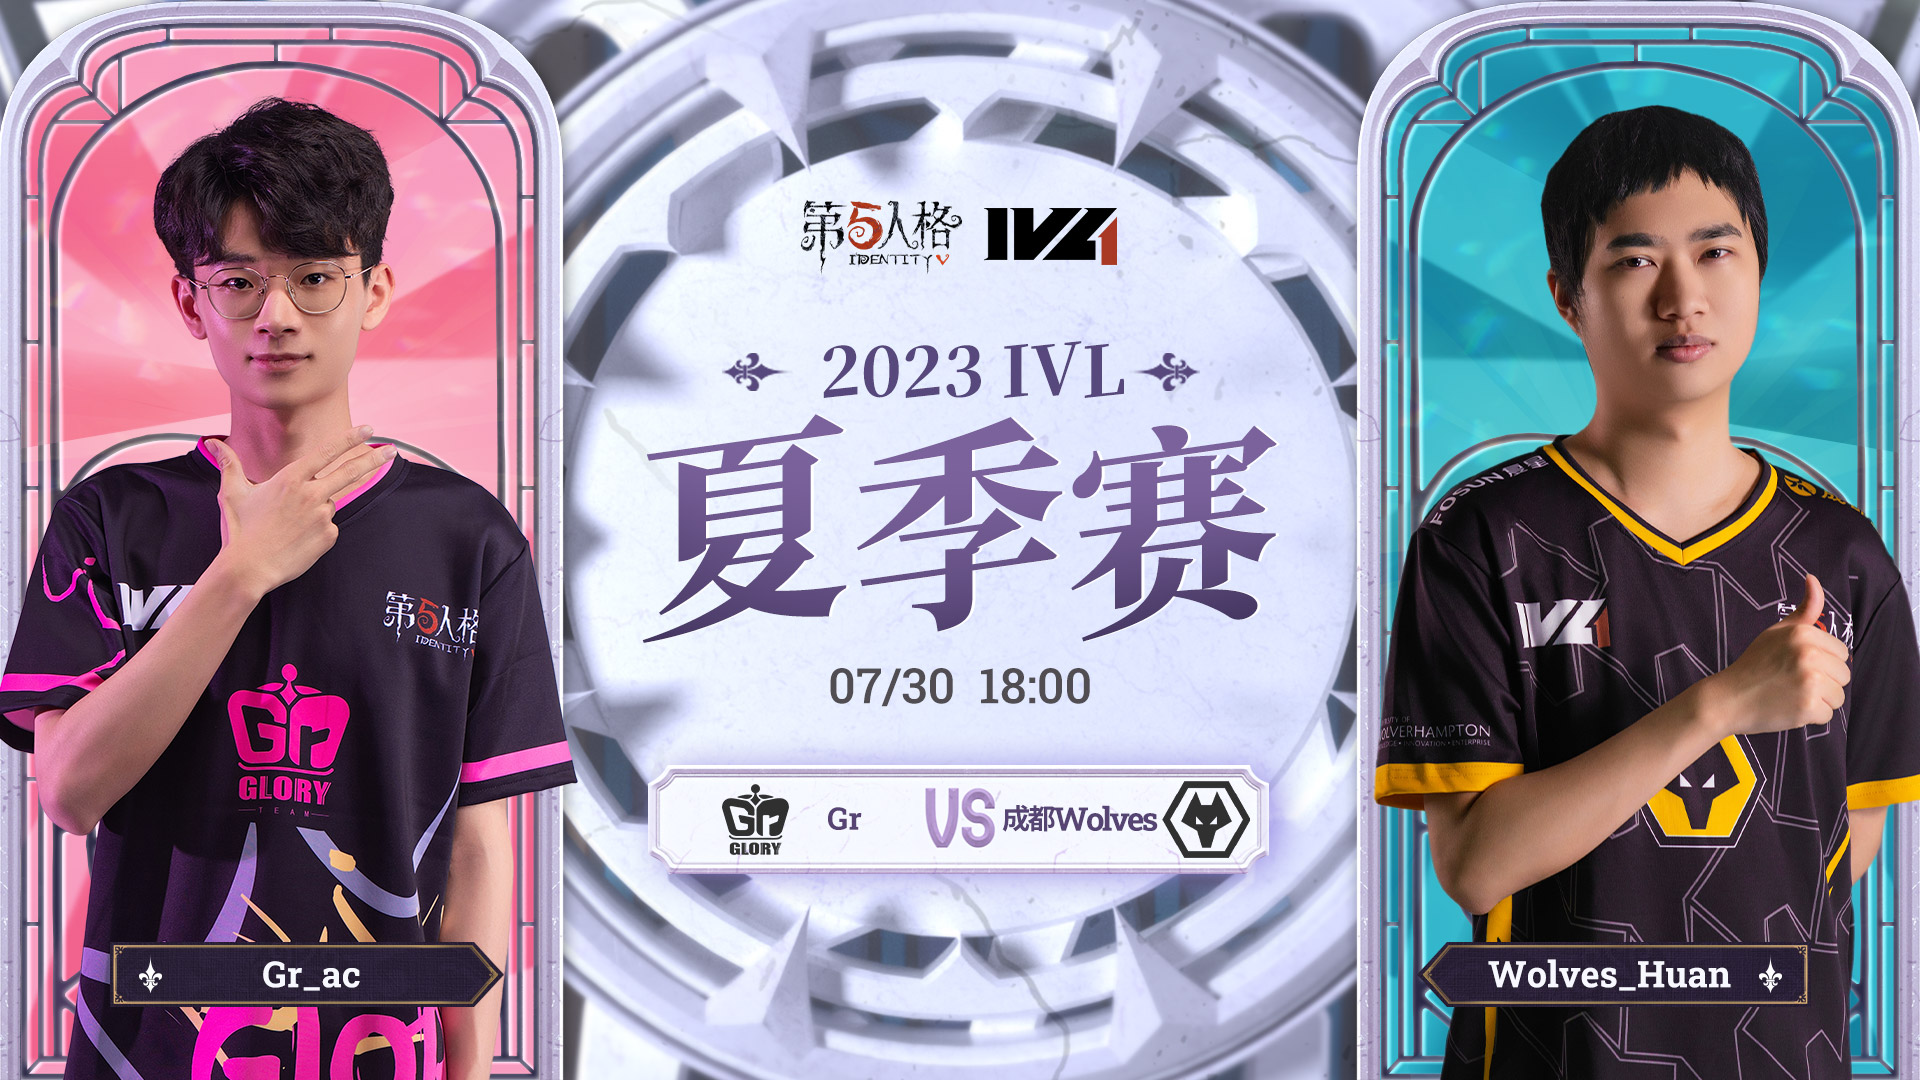 【2023IVL】夏季赛W8D3录像 Gr vs 成都Wolves